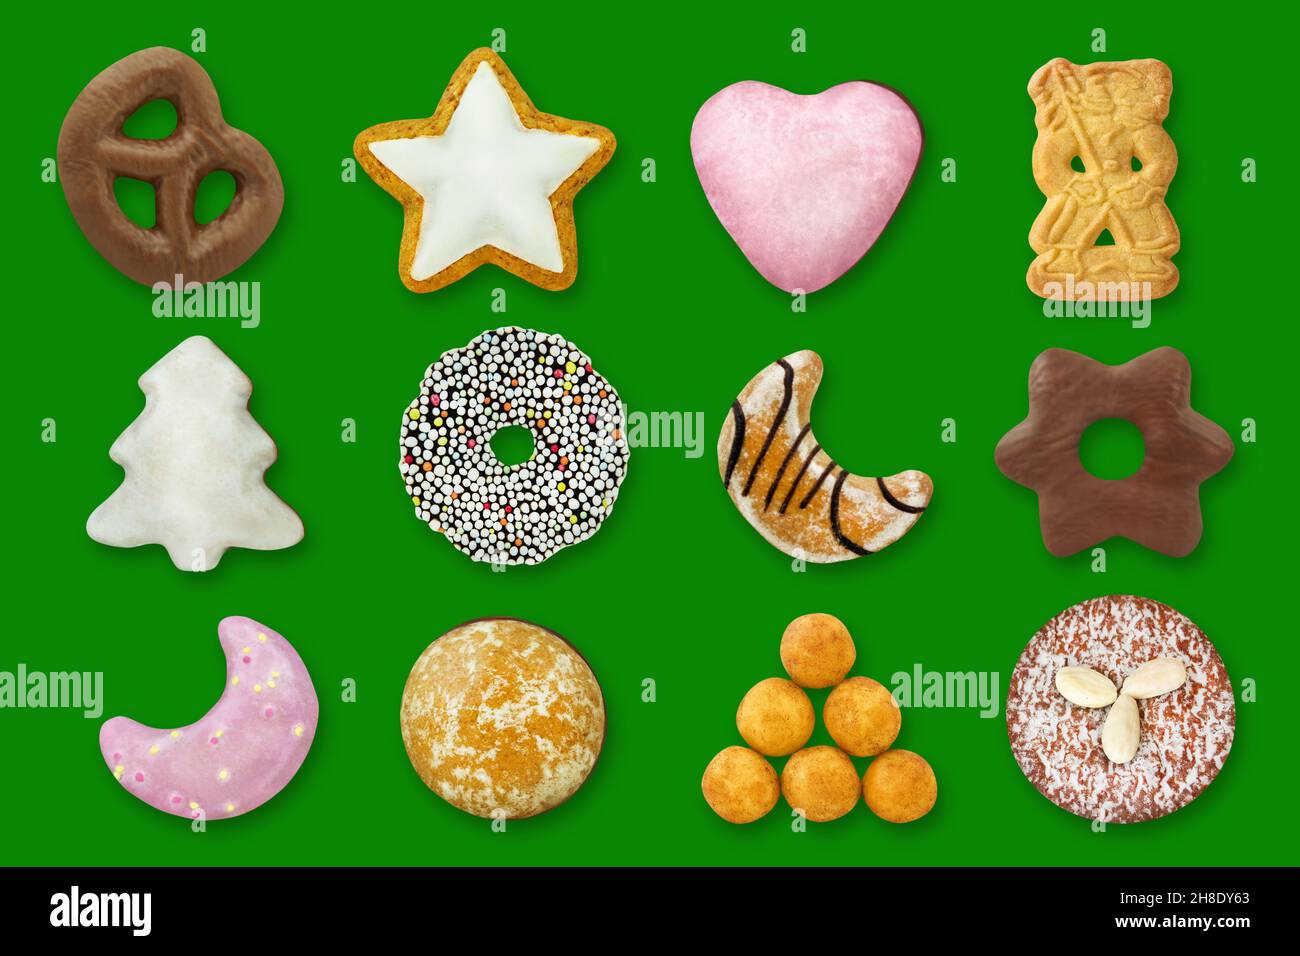 Varios pasteles de Navidad y dulces sobre fondo verde Foto de stock